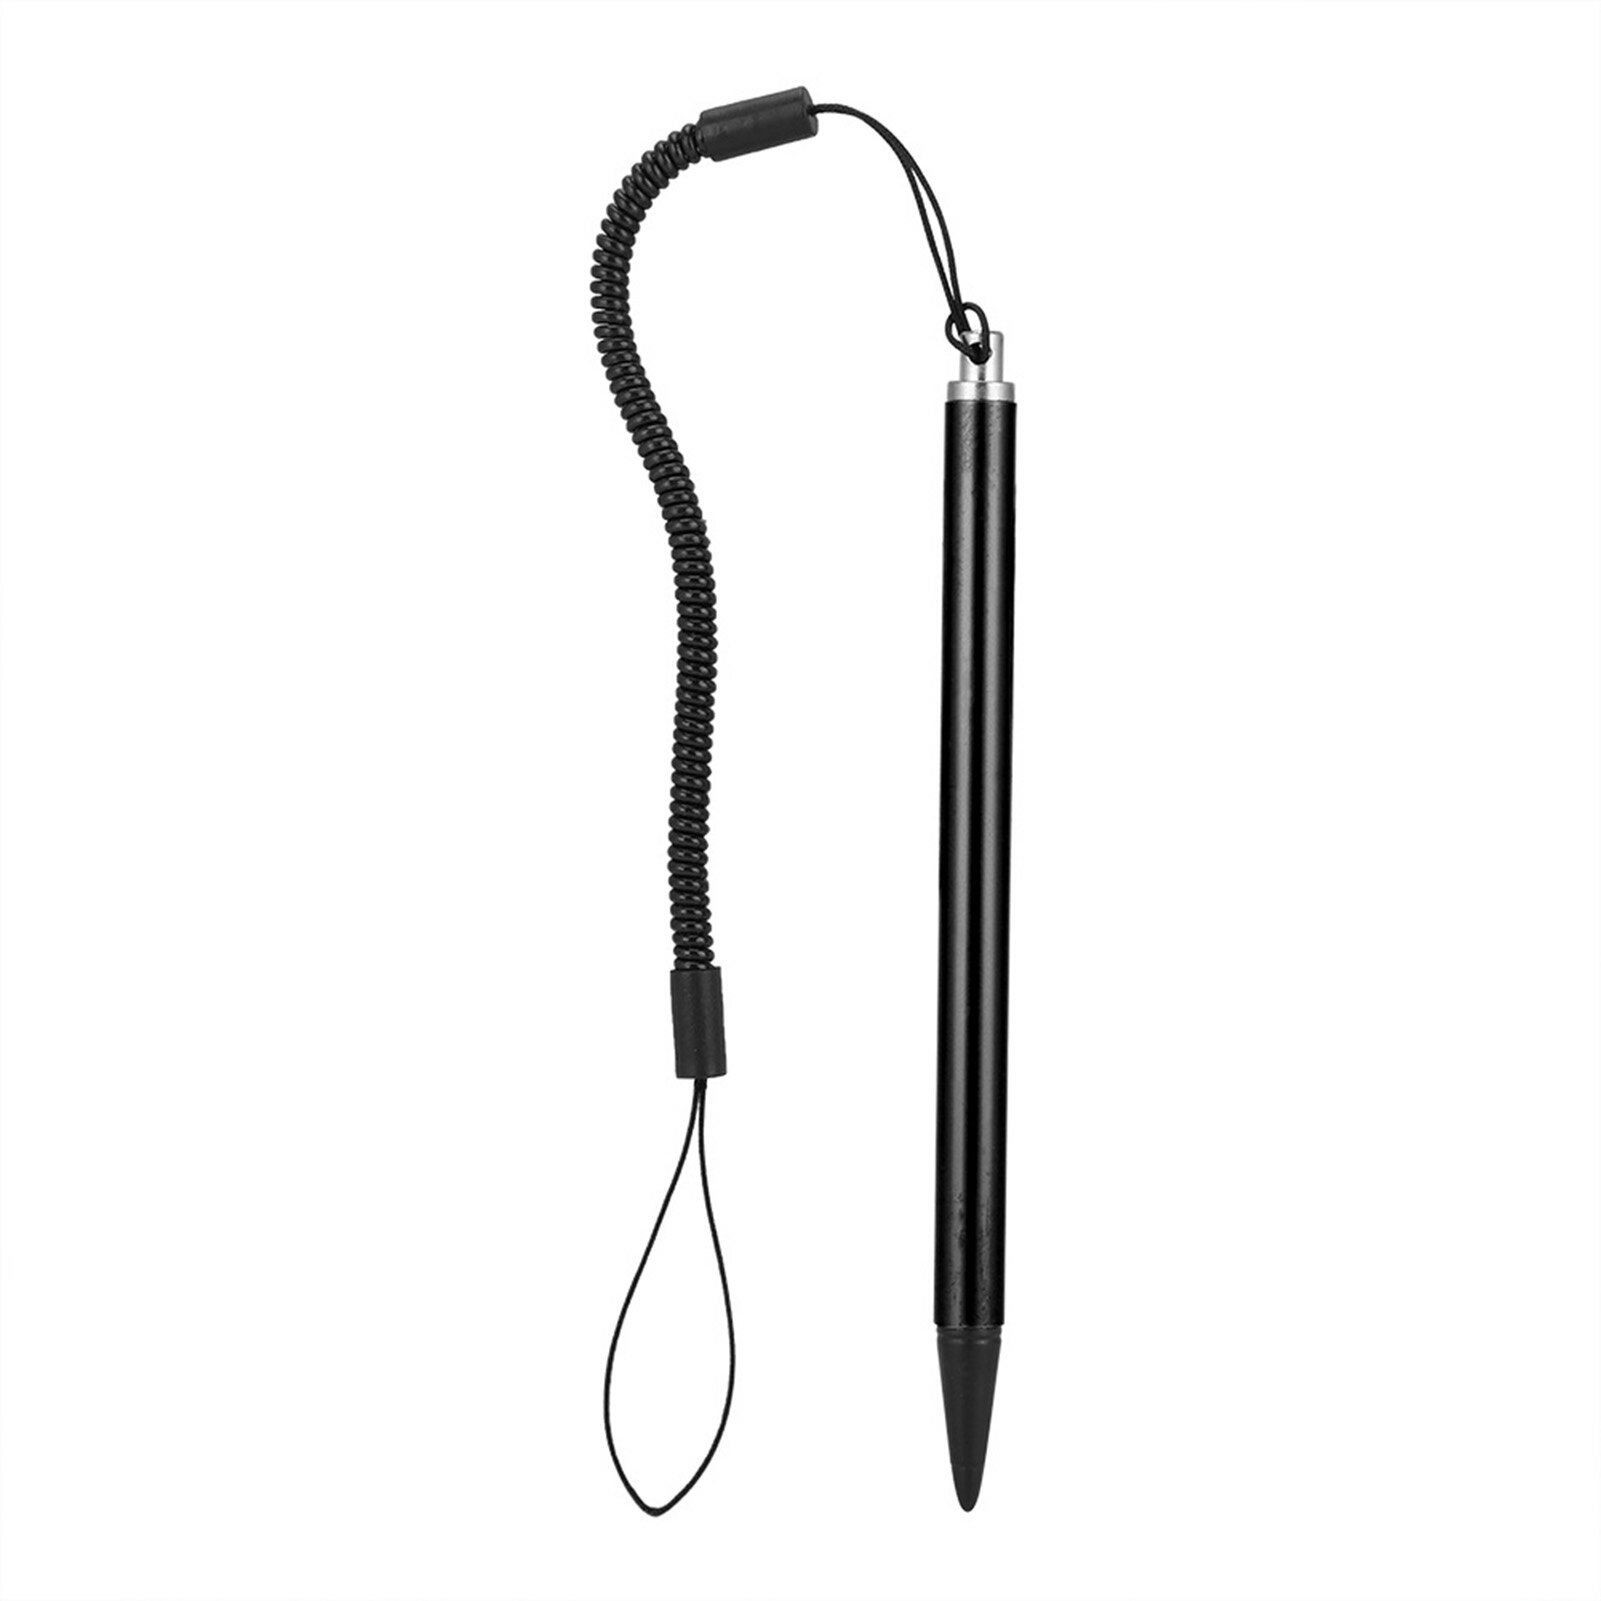 タッチペン グリップスタイラス 軽量 対応 POS PDA ブラウザ用 耐久性 スプリングロープ付き スマートホームデバイス 抵抗膜式タッチペン タッチペン(黒)